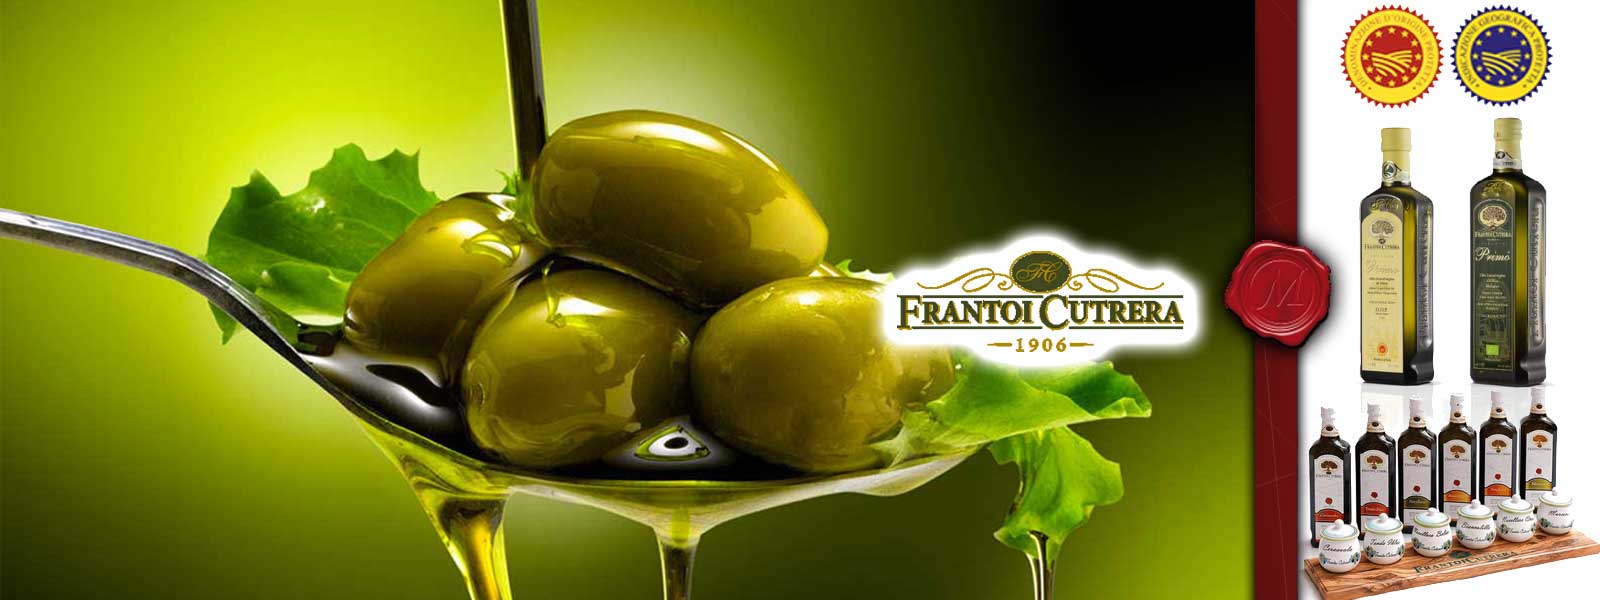 Oliivioljy Frantoi Cutrerasta 